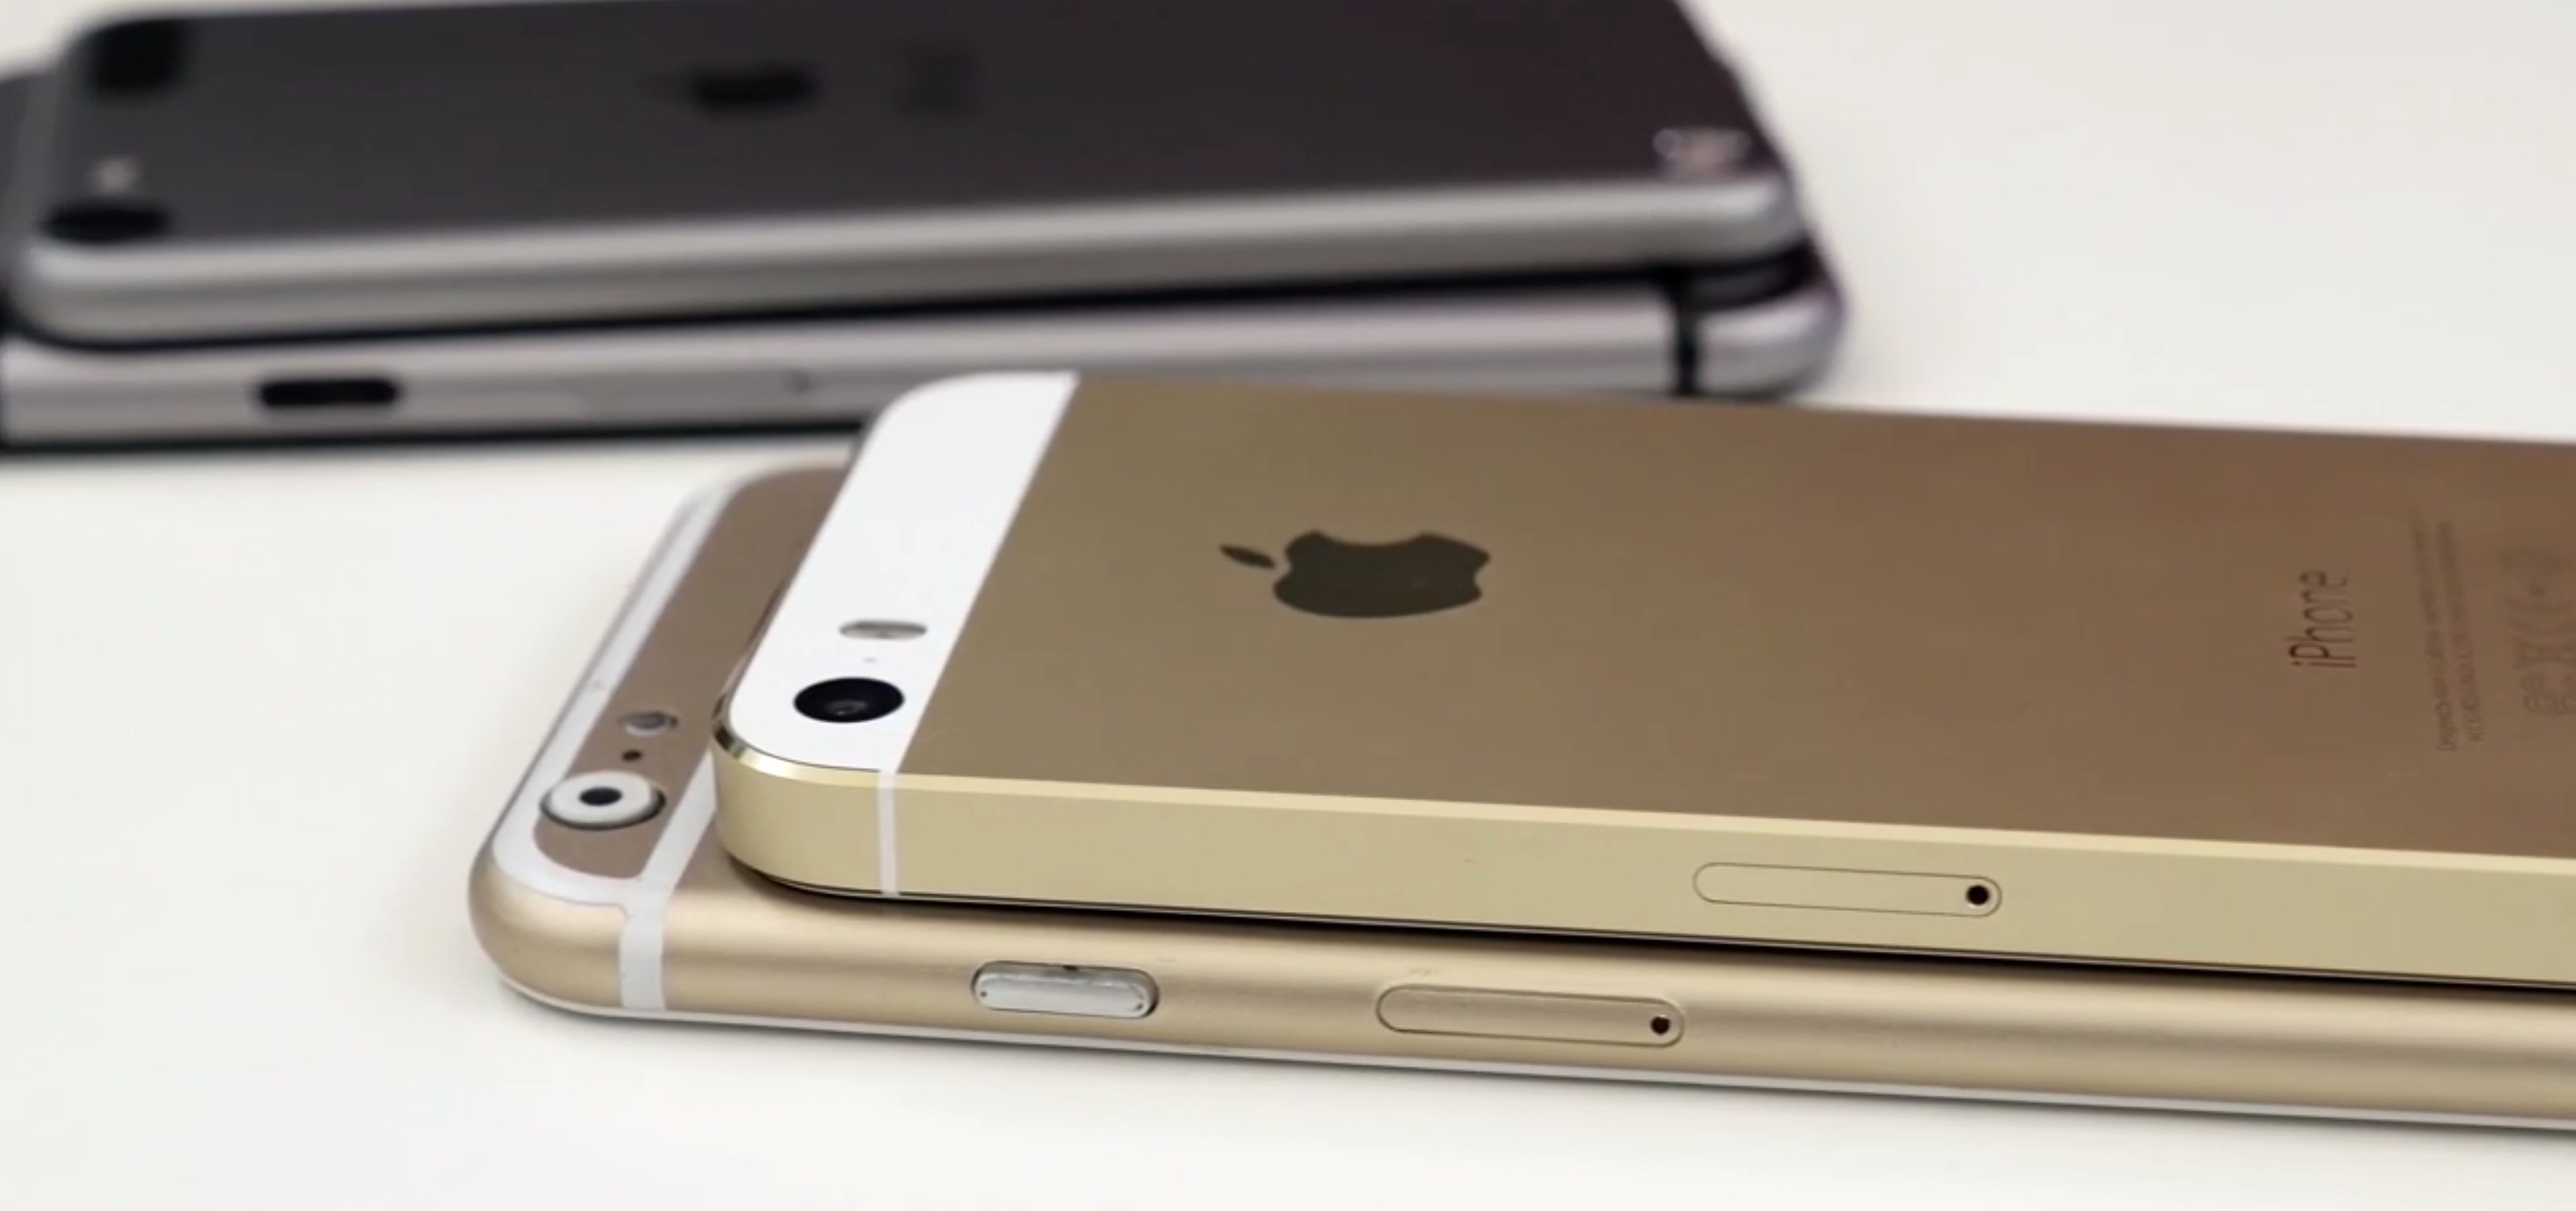 Foxconn startet iPhone 6 Produktion im Juli 8